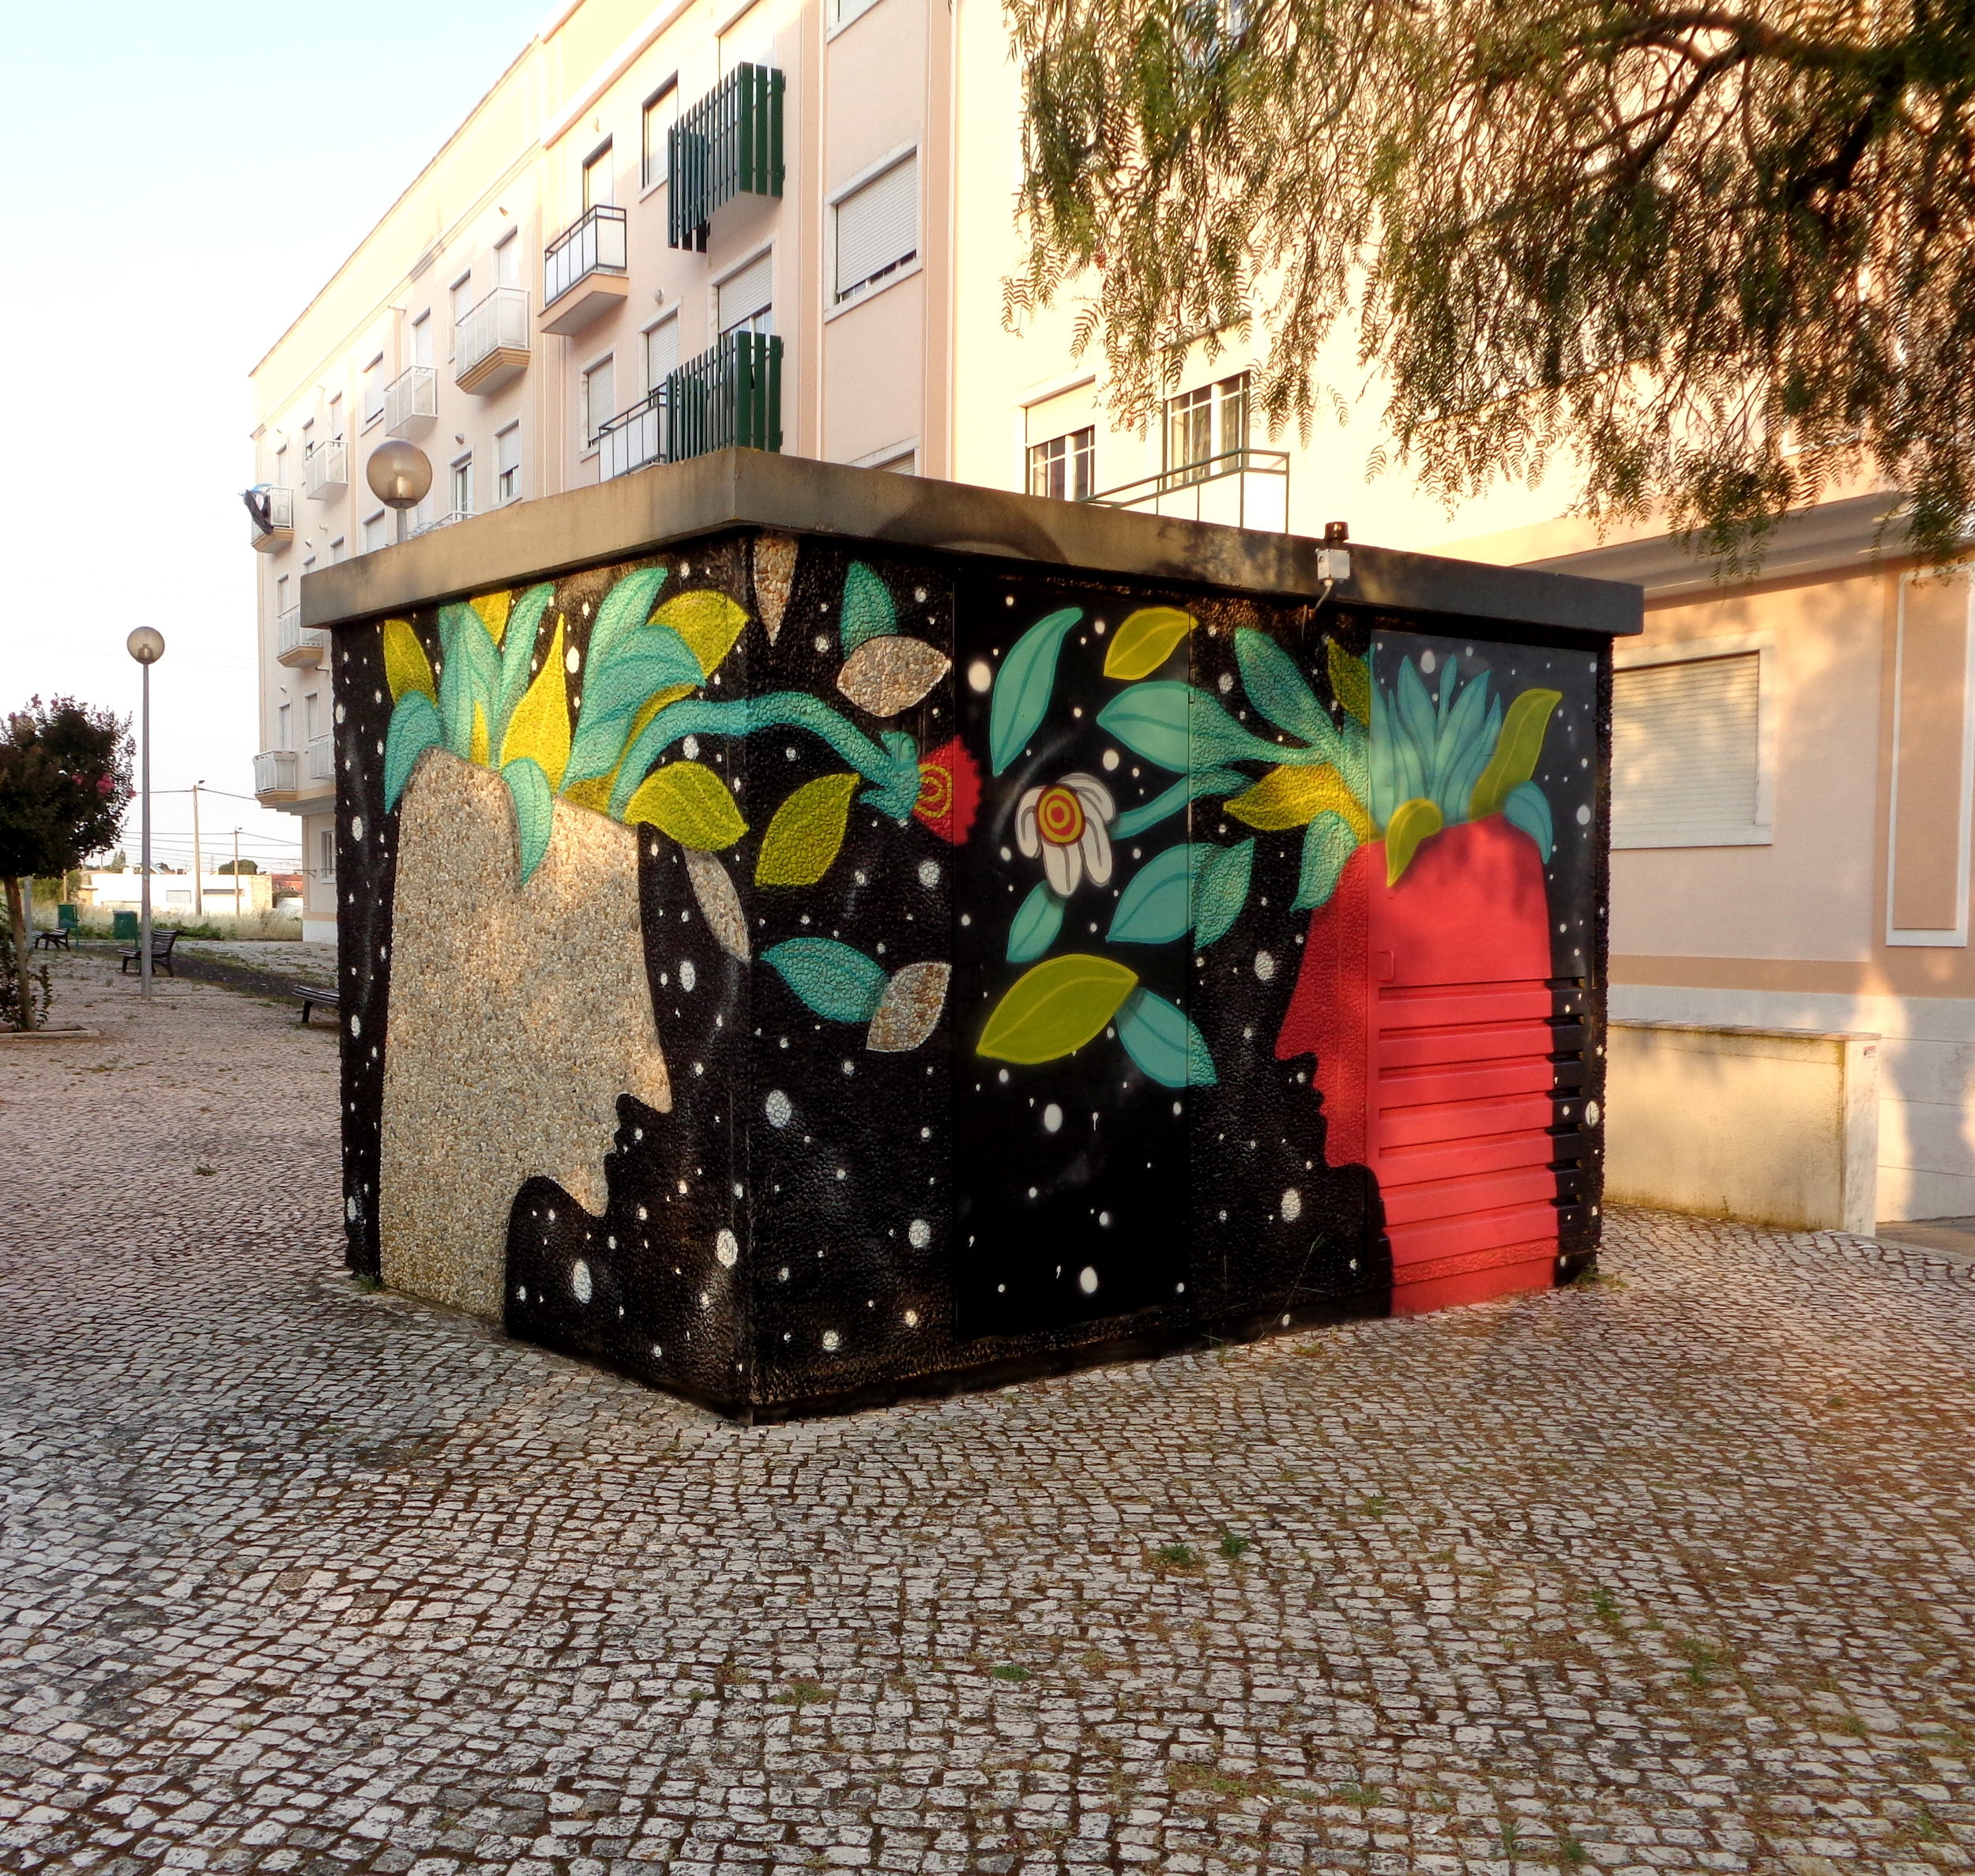 Loures Arte Publica, Portugal 2017